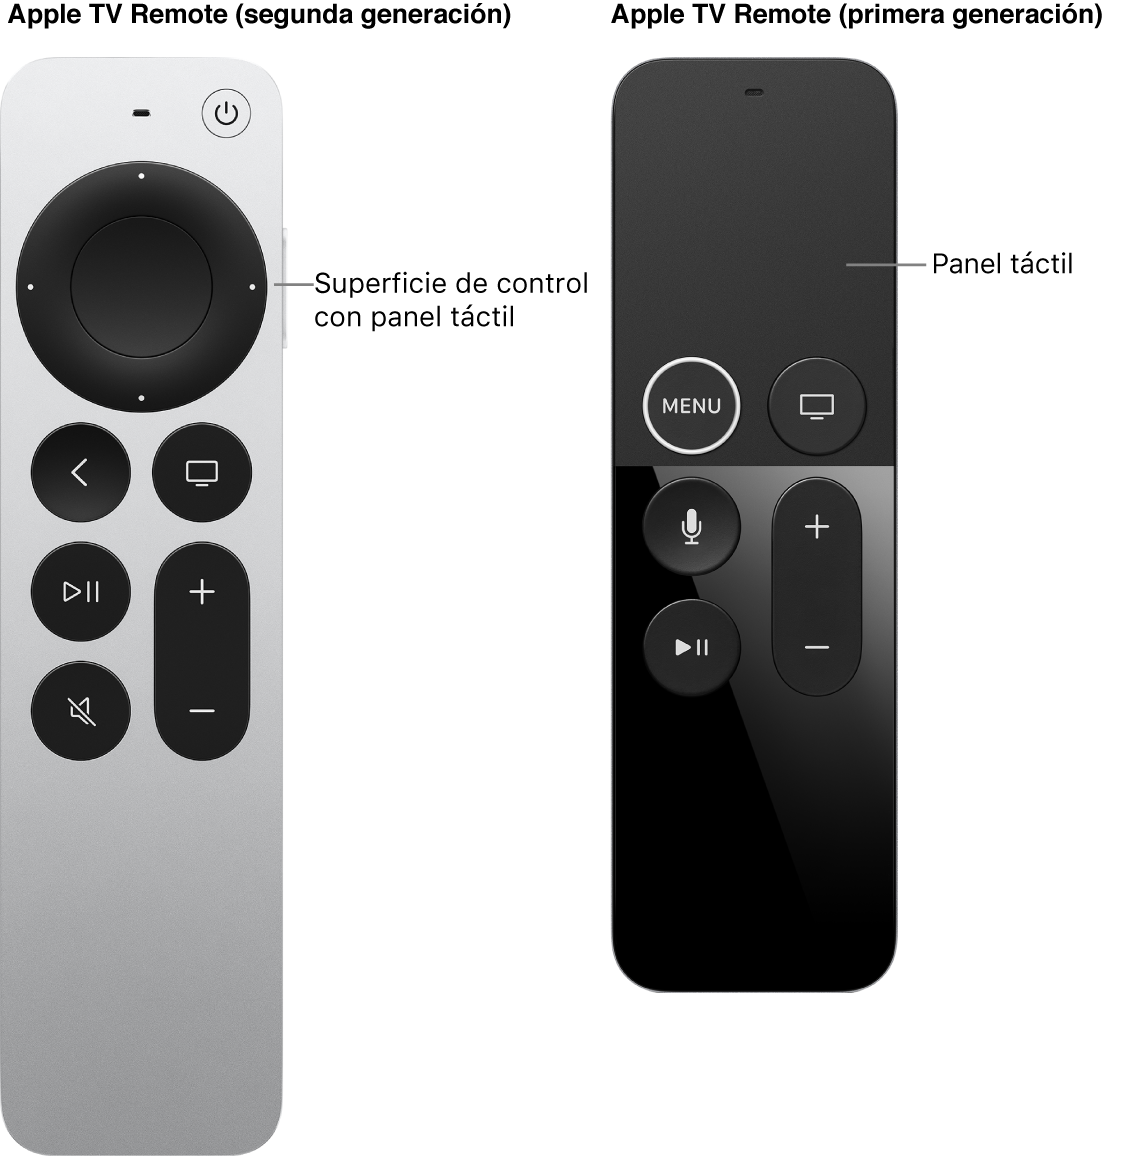 El Apple TV Remote (segunda generación) con superficie de control, y el Apple TV Remote (primera generación) con panel táctil